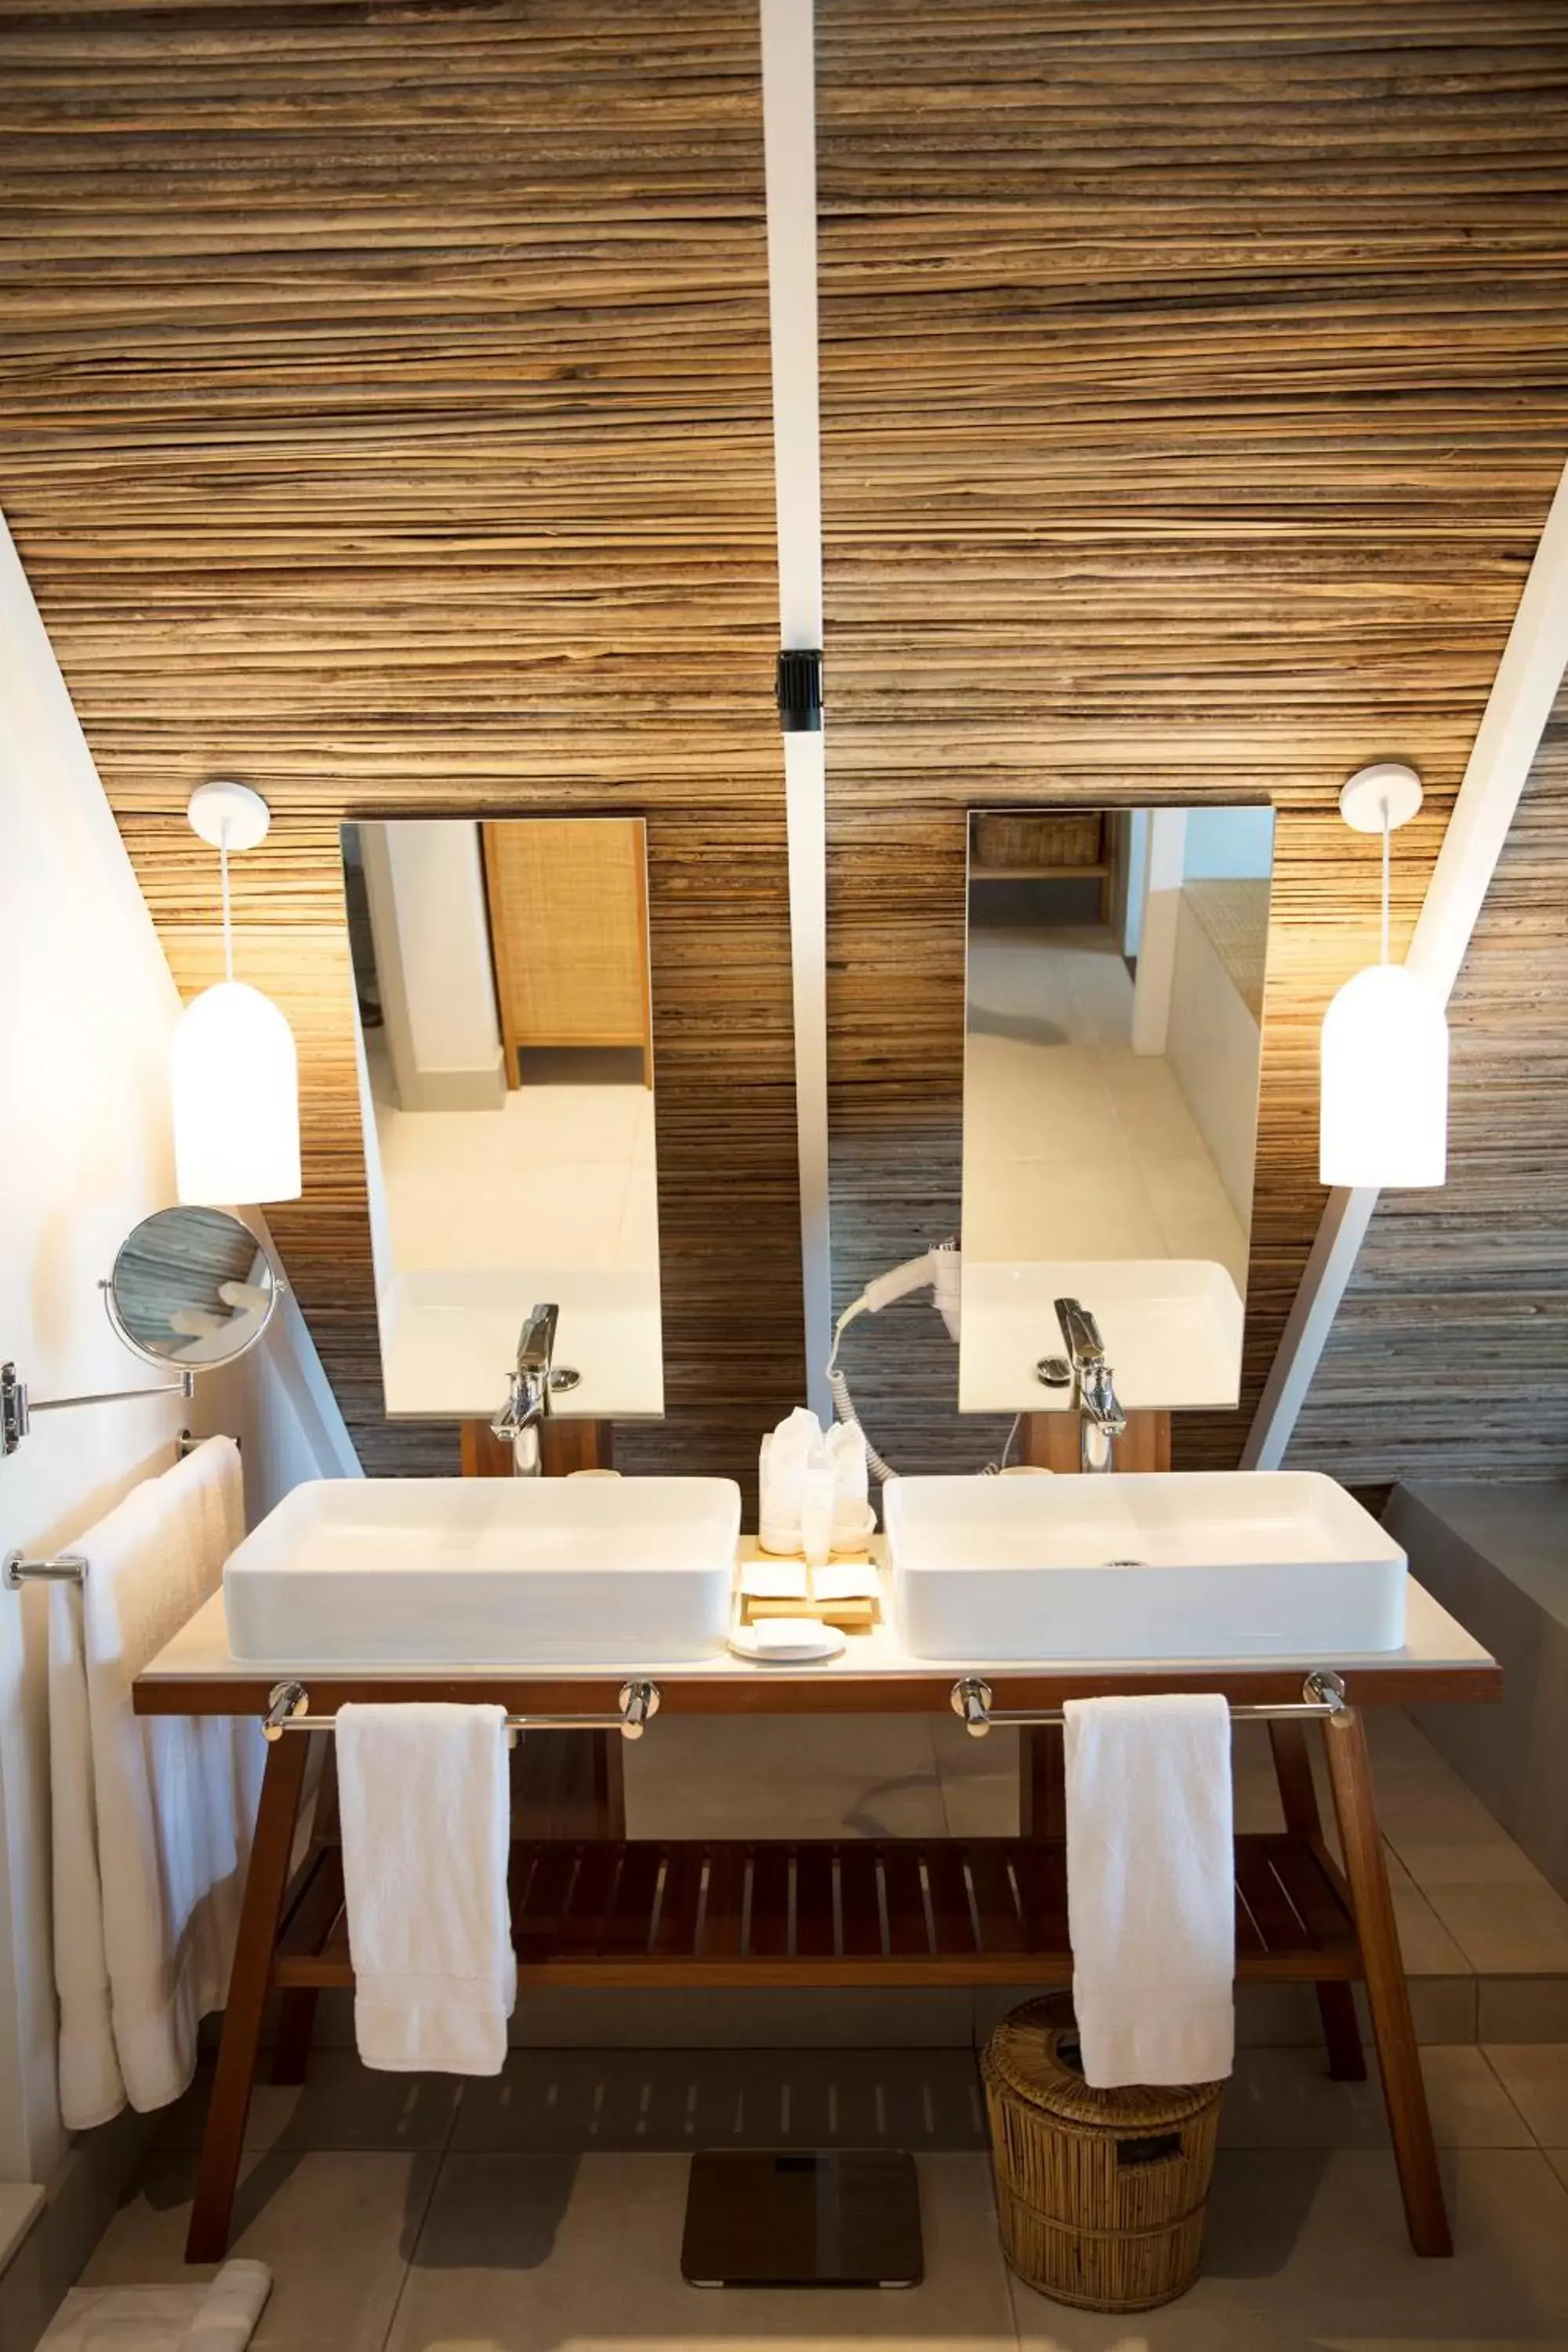 Bathroom in Preskil Island Resort